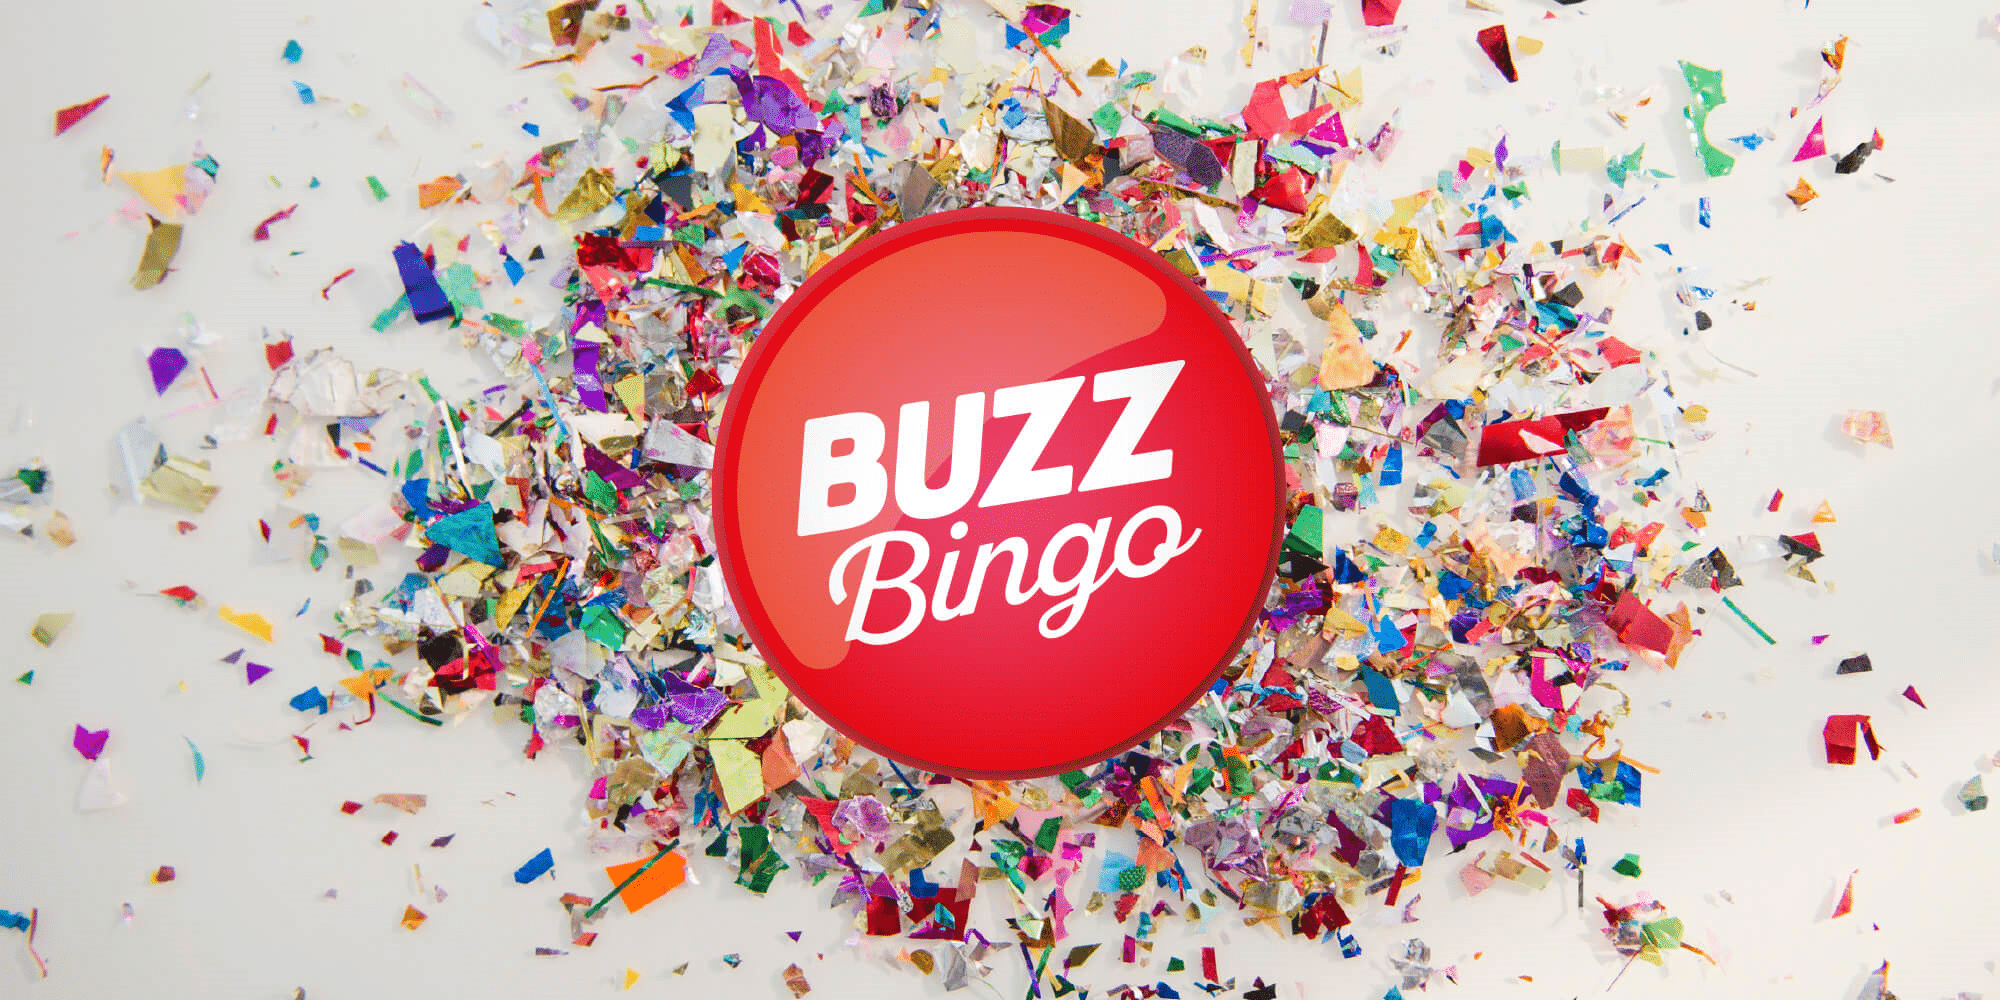 Buzz bingo websites